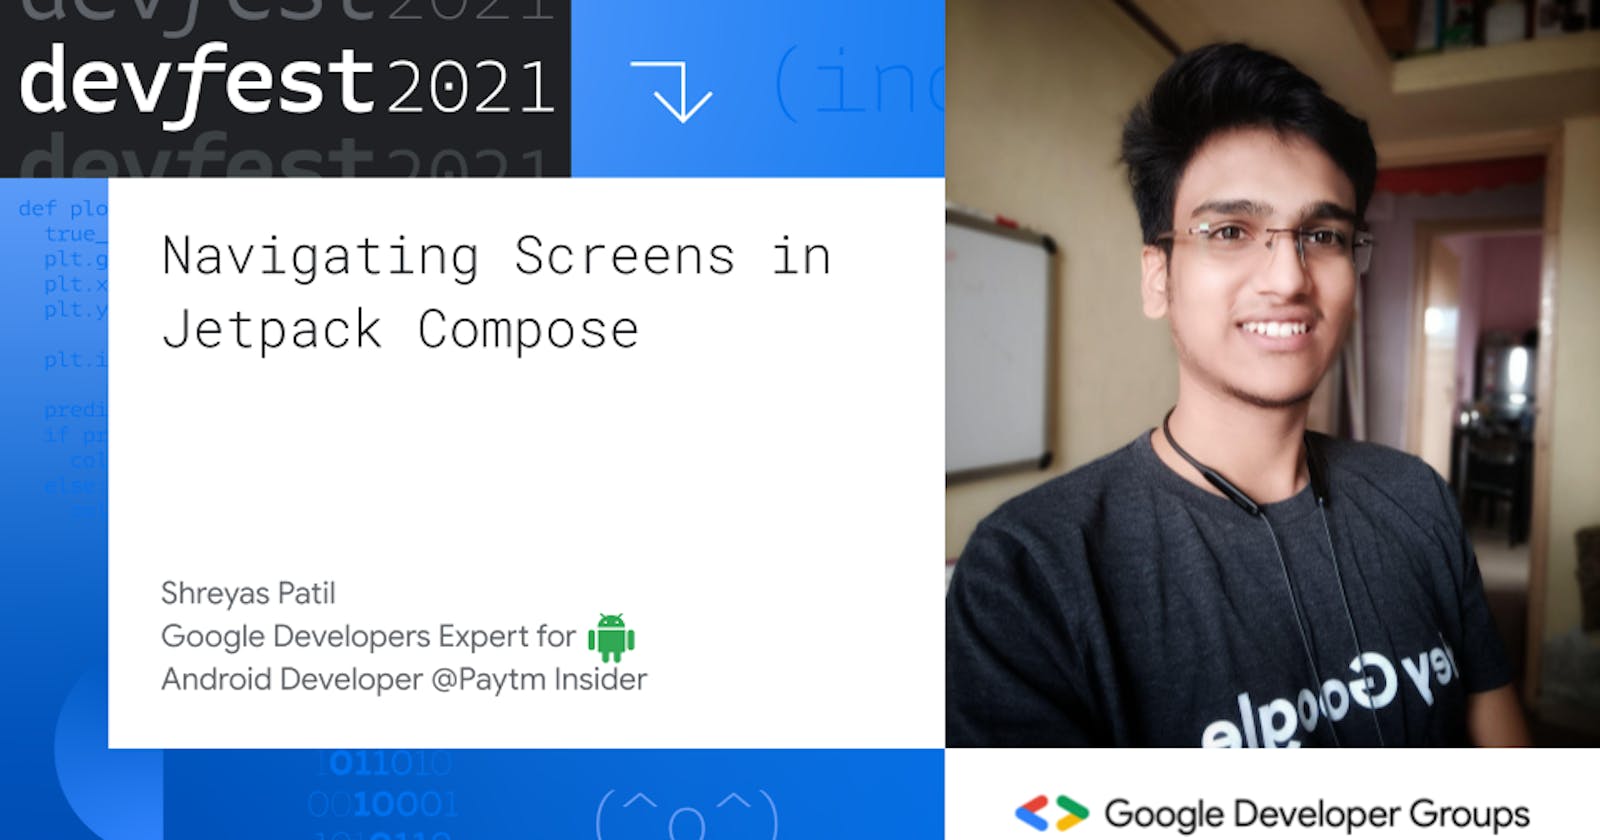 Navigating Screens in Jetpack Compose (DevFest India 2021 - Mobile Track)